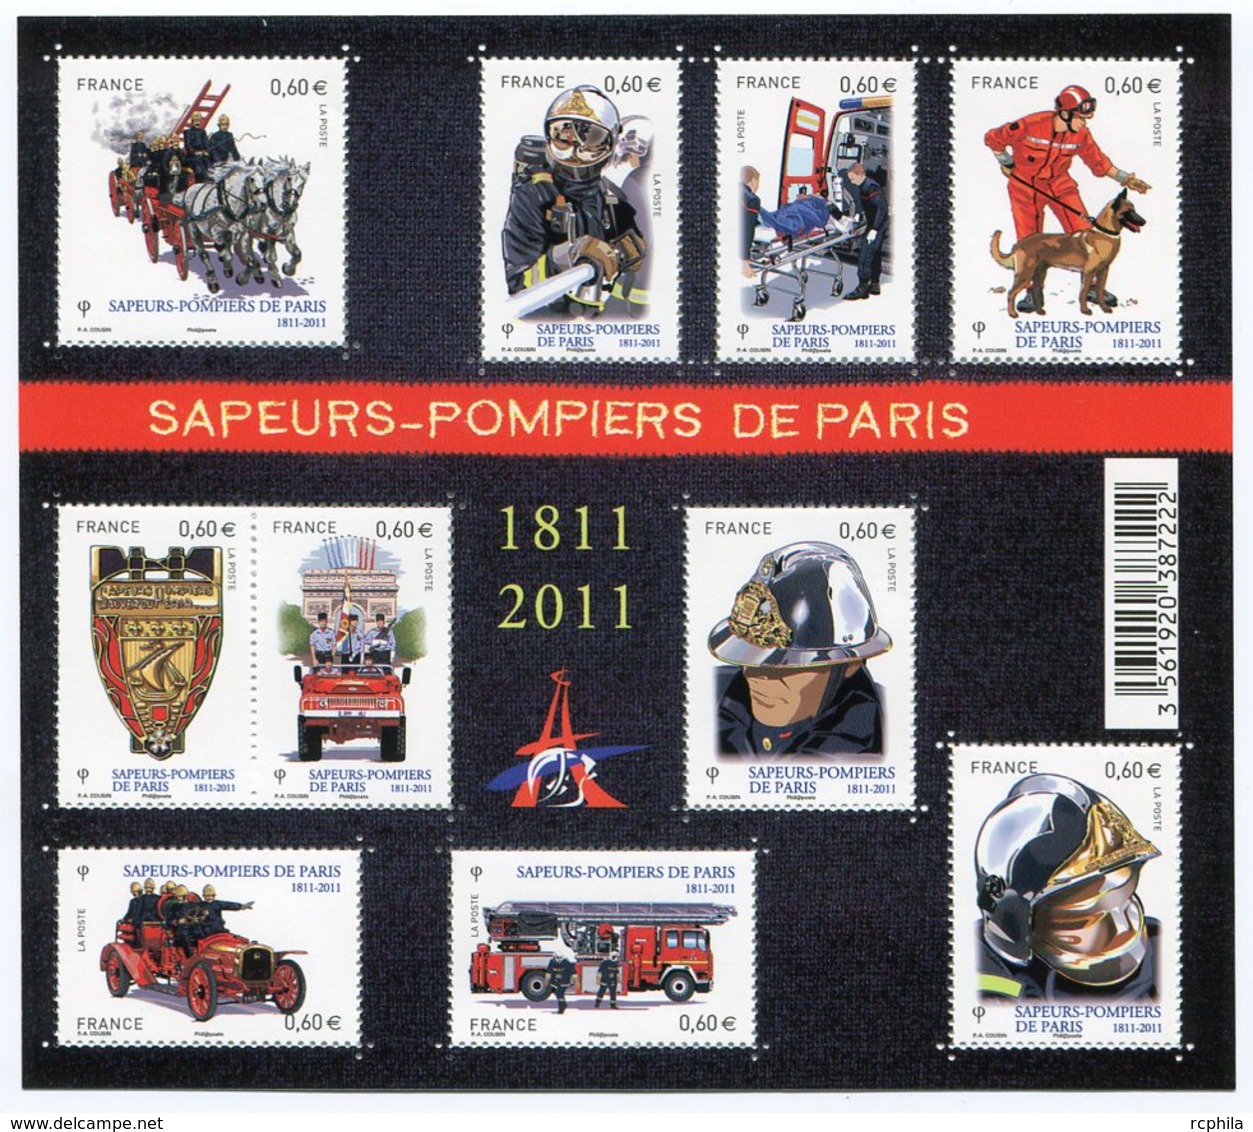 RC 12092 FRANCE BF N° F4582 SAPEURS POMPIERS DE PARIS BLOC FEUILLET NEUF ** A LA FACIALE - Mint/Hinged